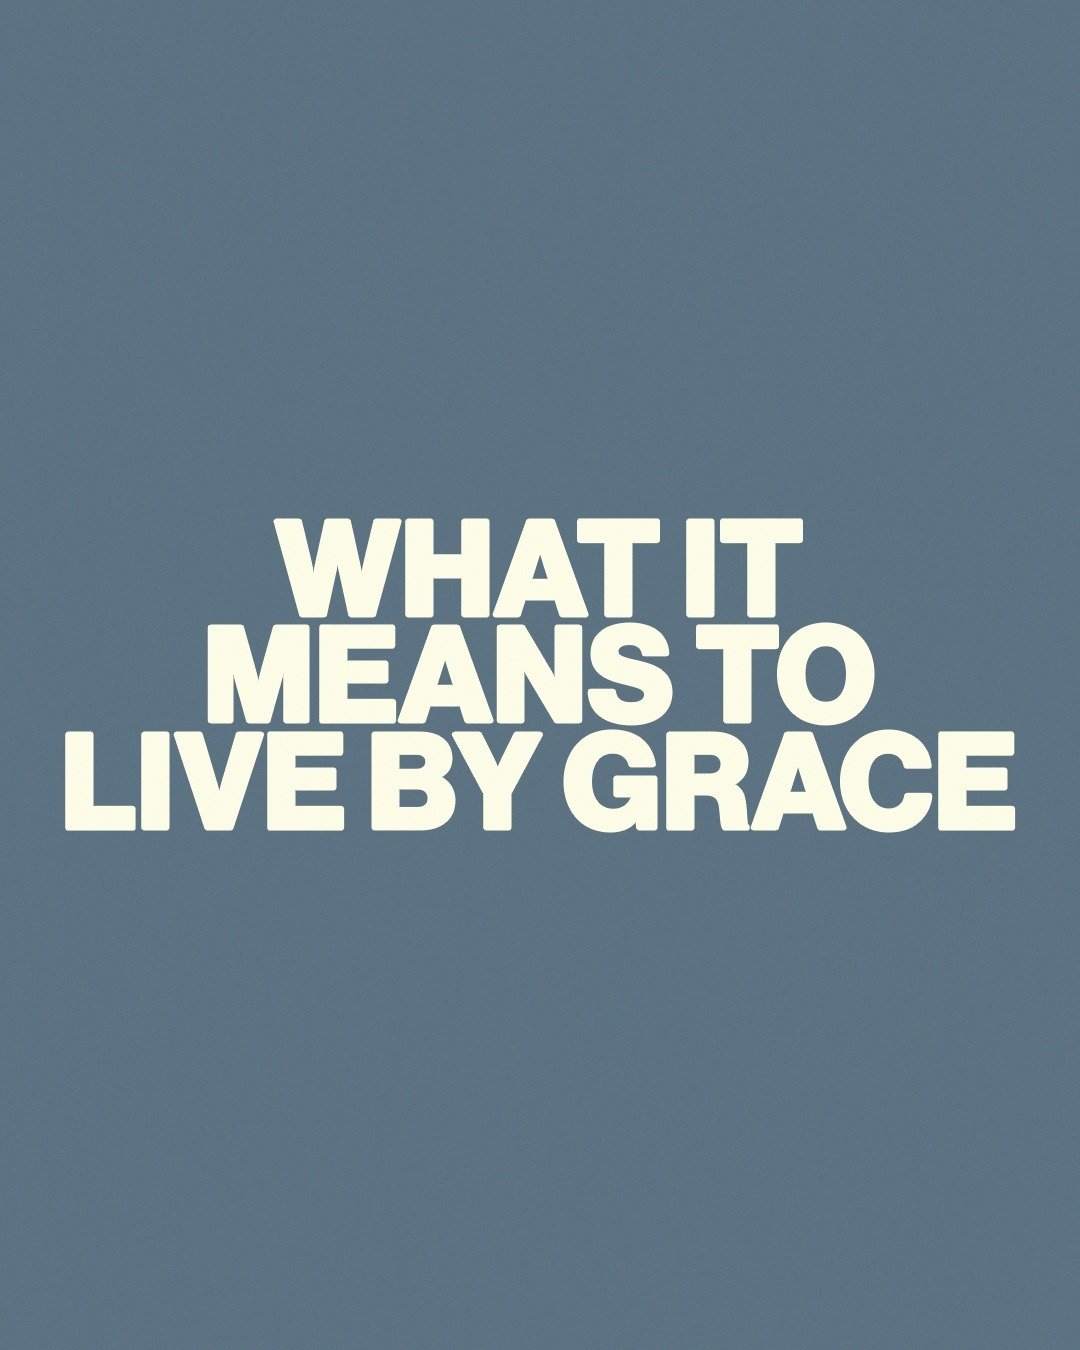 WHAT IT MEANS TO LIVE BY GRACE
ㅤ
#grace #godsgrace #savedbygrace